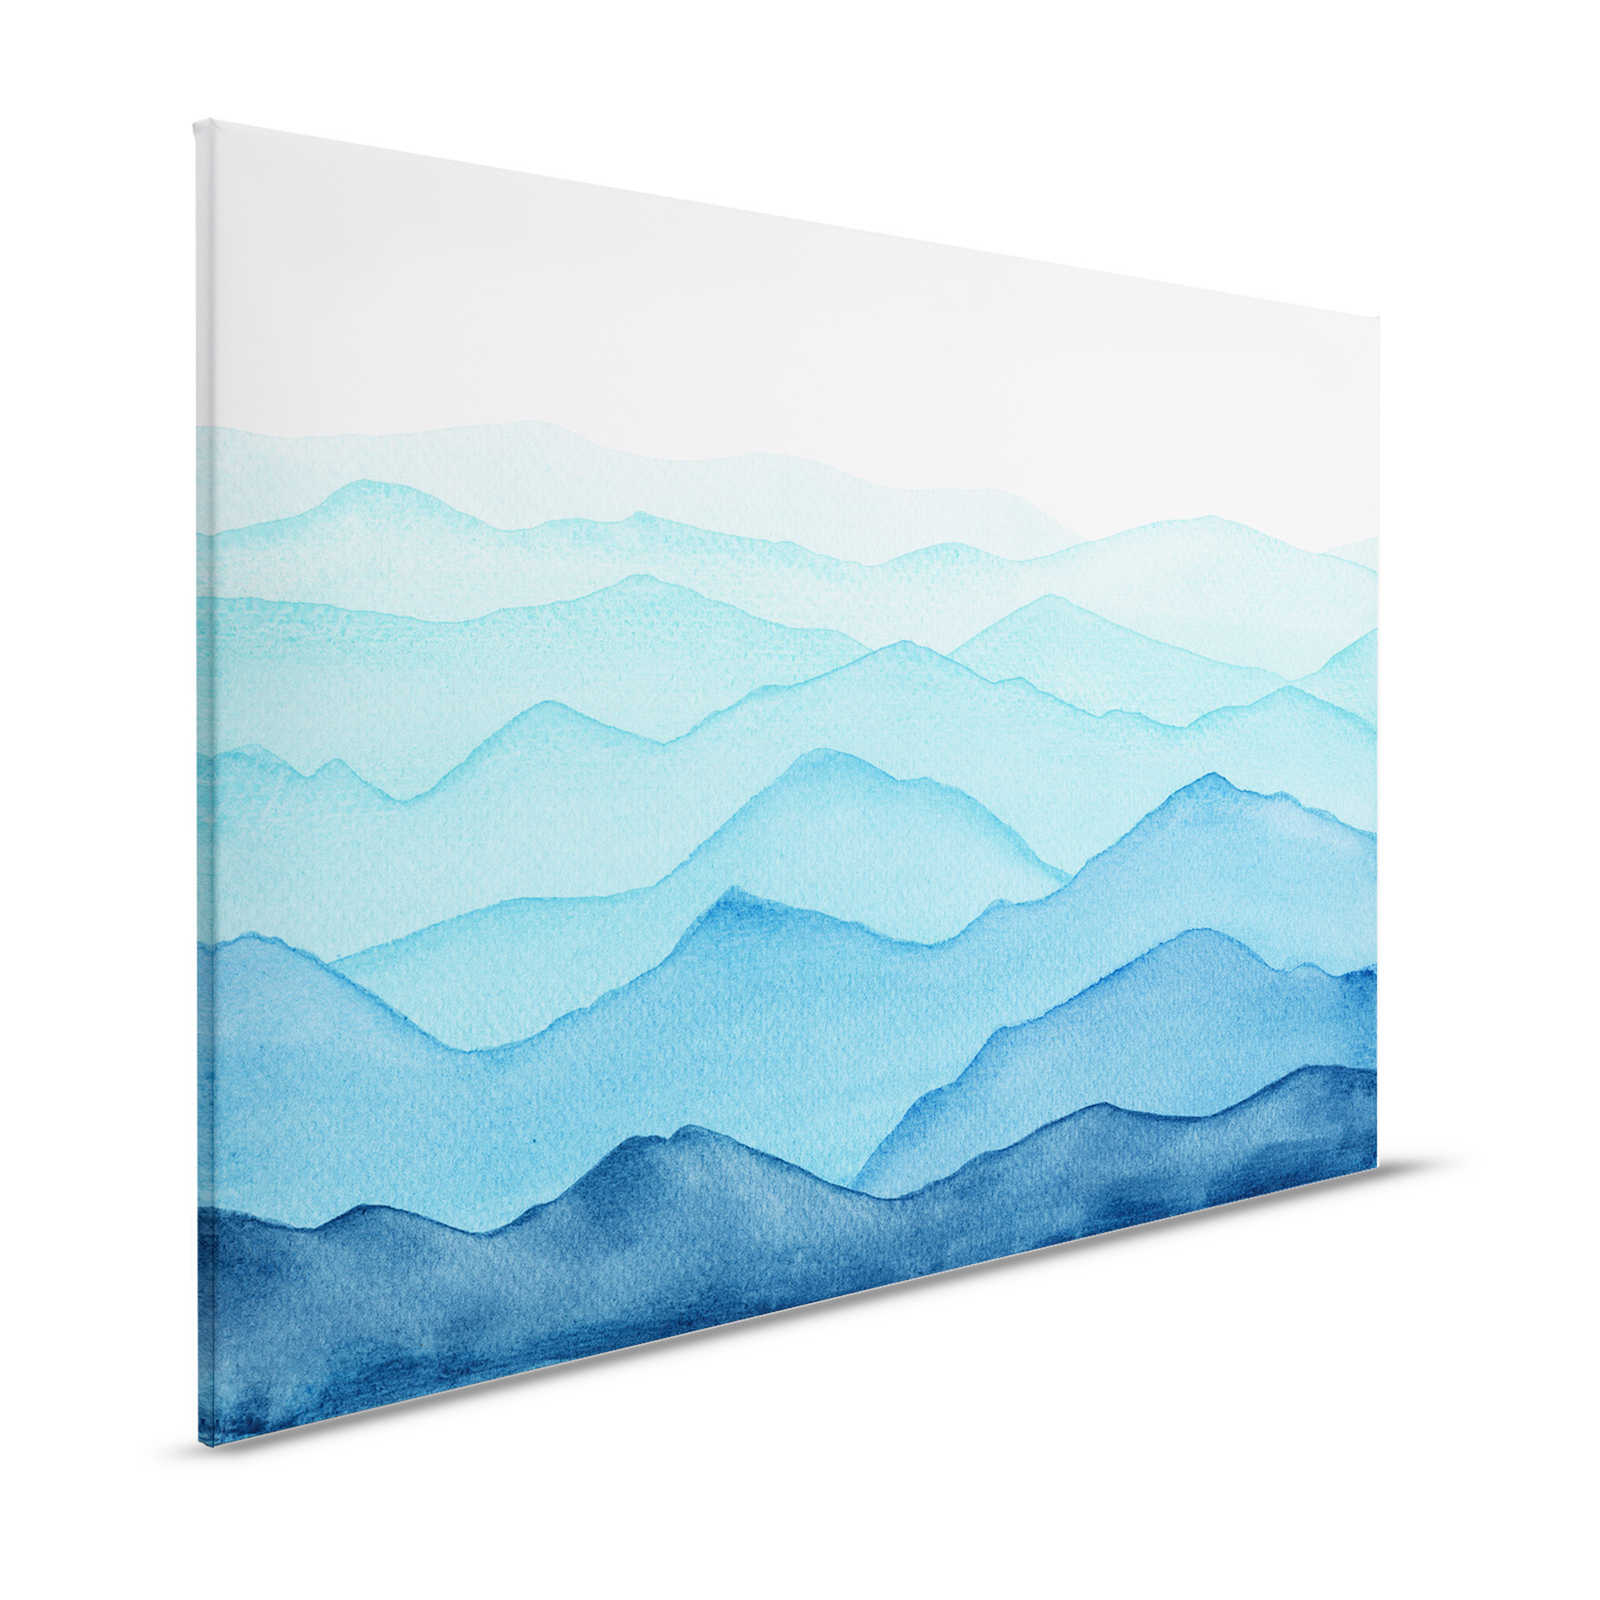 Leinwand Meer mit Wellen in aquarell – 120 cm x 80 cm
